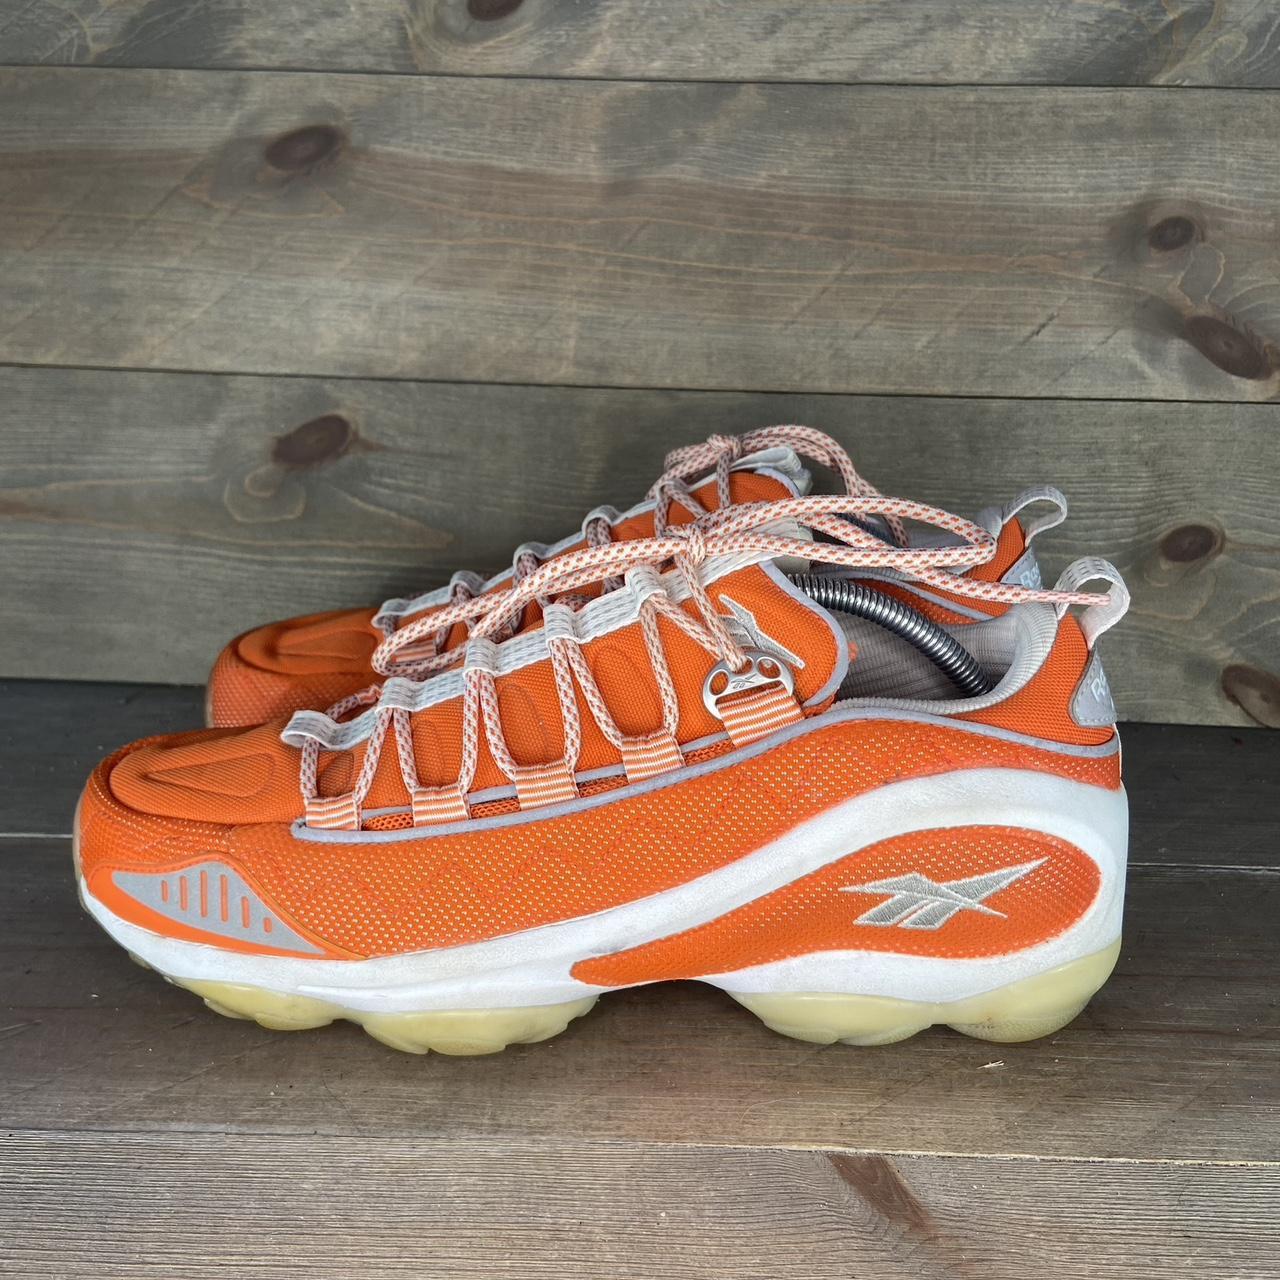 Reebok DMX run mens size 10.5 shoes orange white... - Depop